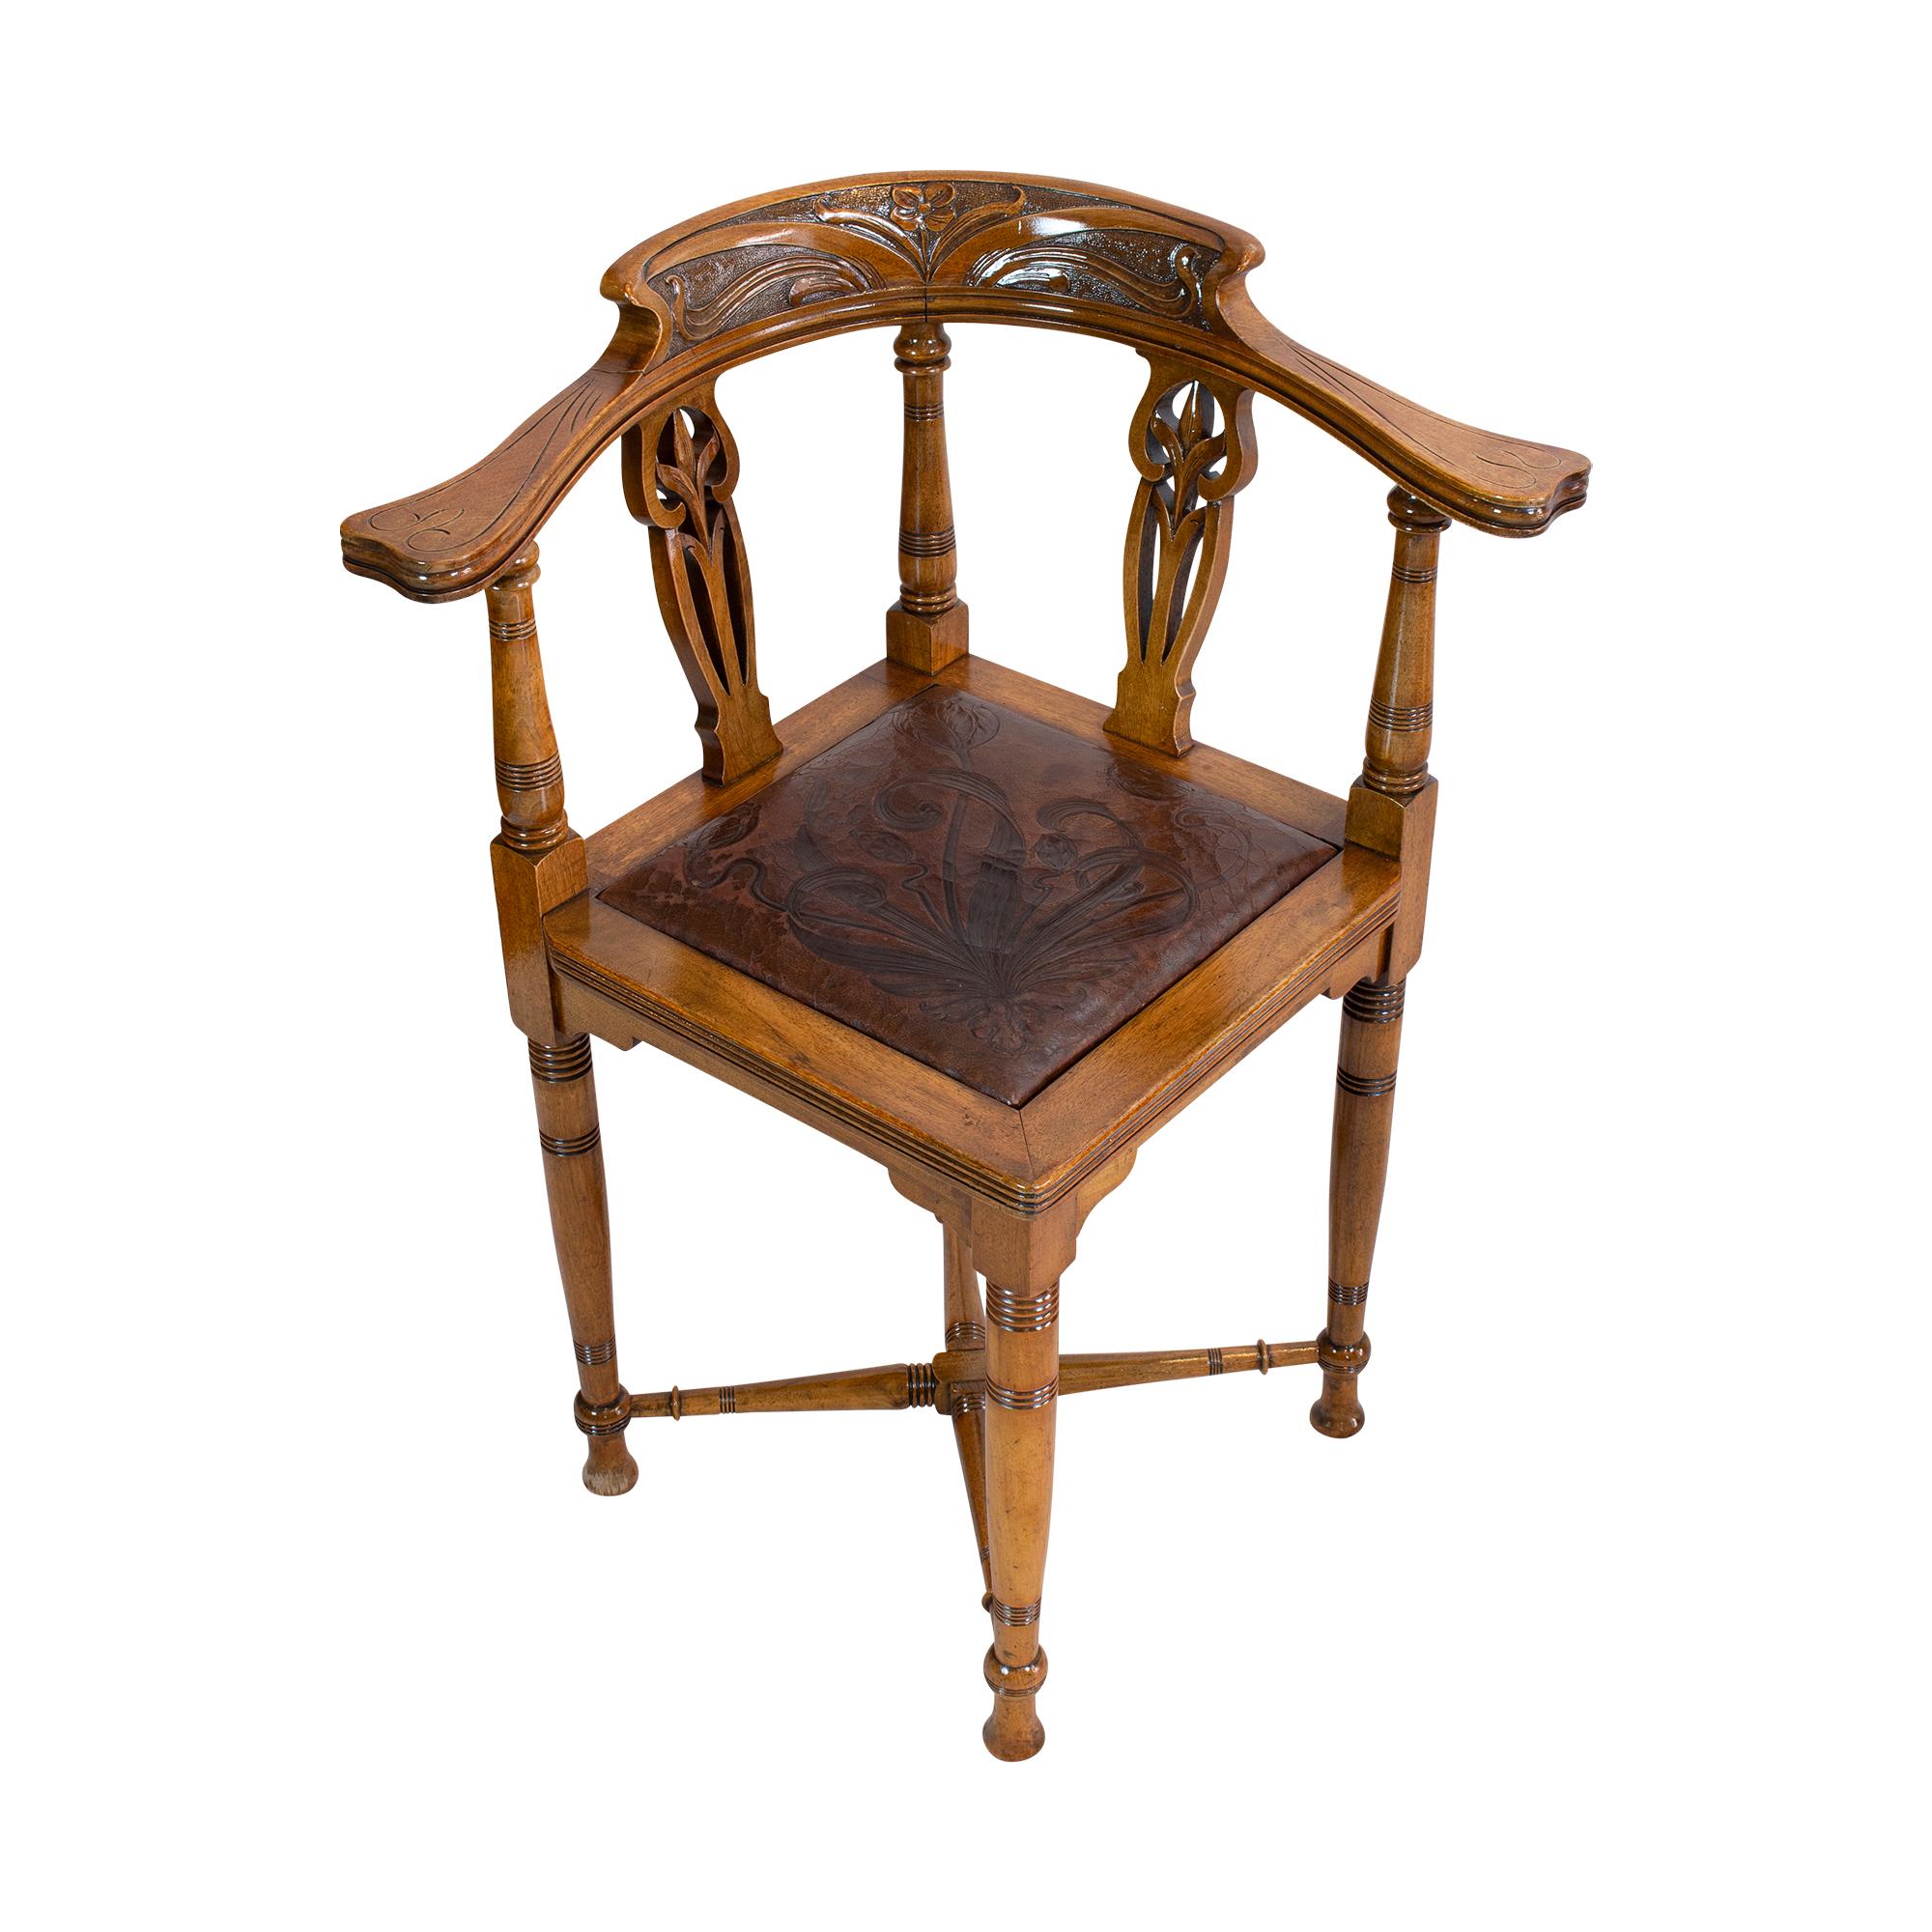 Sehr schöner seltener kleiner Ecksessel, auf dem man bequem sitzen kann. Der Eckstuhl stammt aus der Zeit des Jugendstils um 1900 aus Deutschland. Der Stuhl wurde aus massivem Nussbaumholz gefertigt. Der Sitz hat den originalen